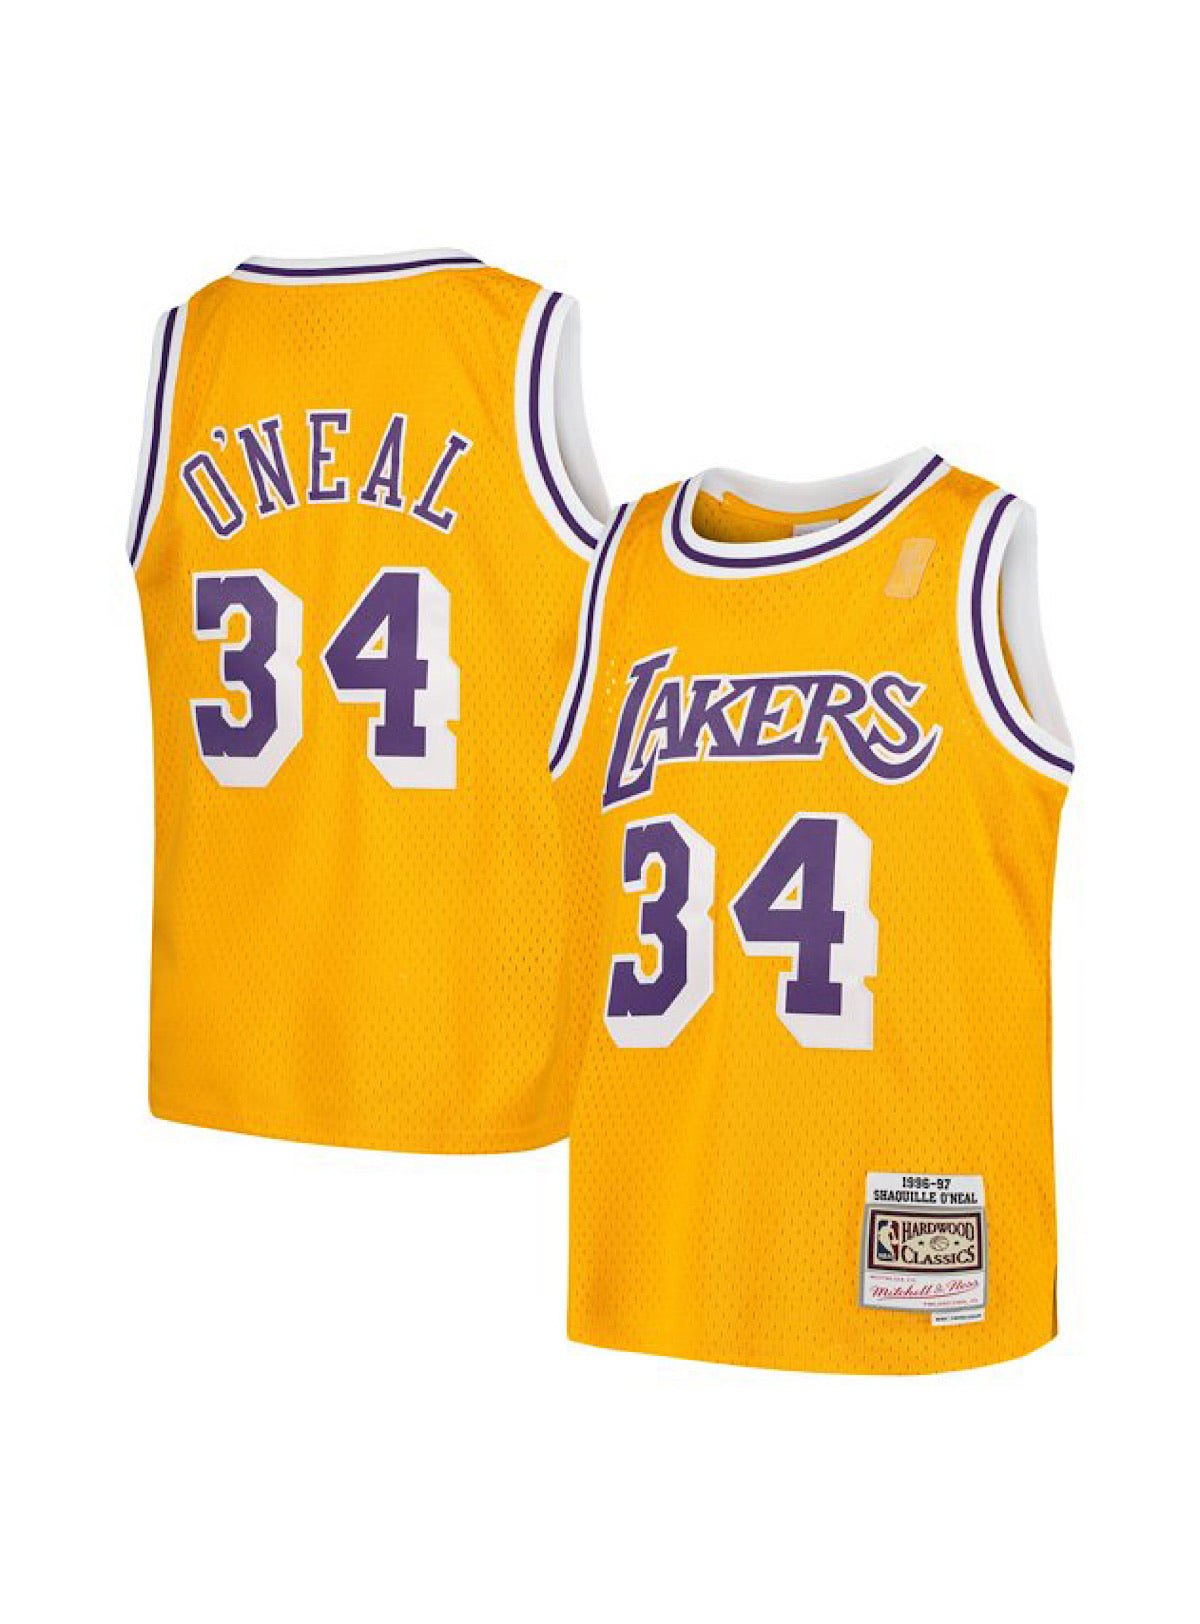 Kids Mitchell & Ness Kids Jersey - Lakers 34 O'Neal - Yellow